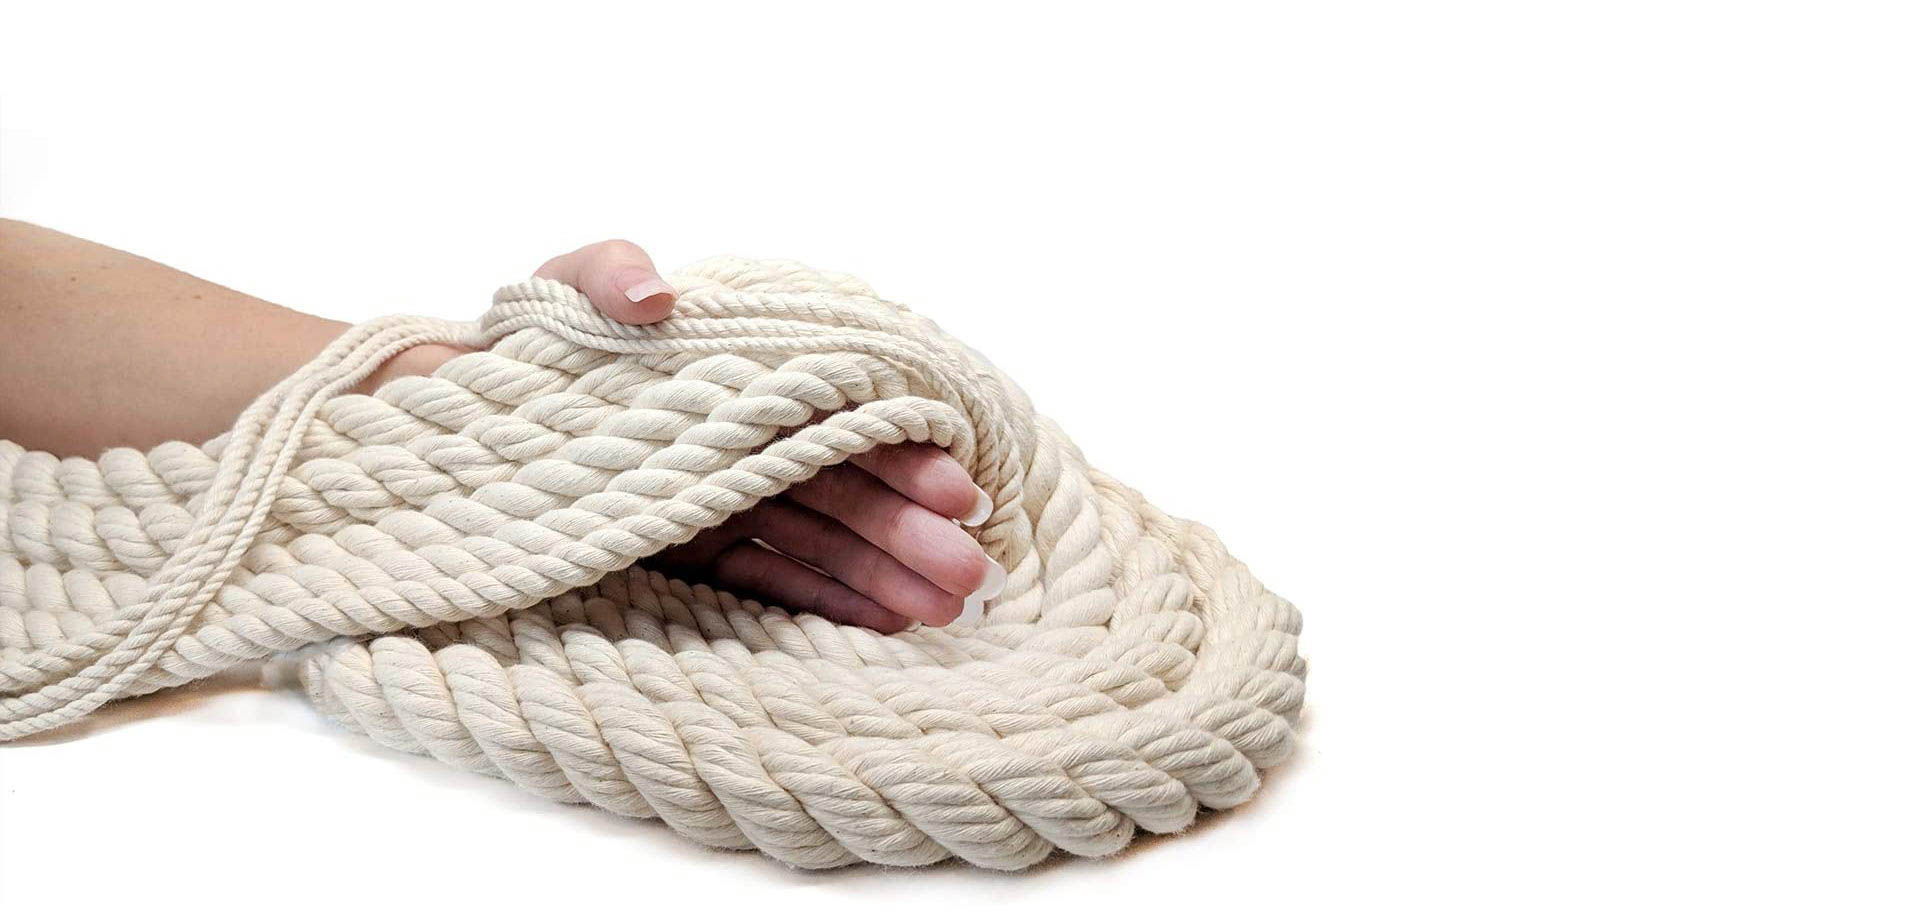 Twisted Cotton bondage rope.